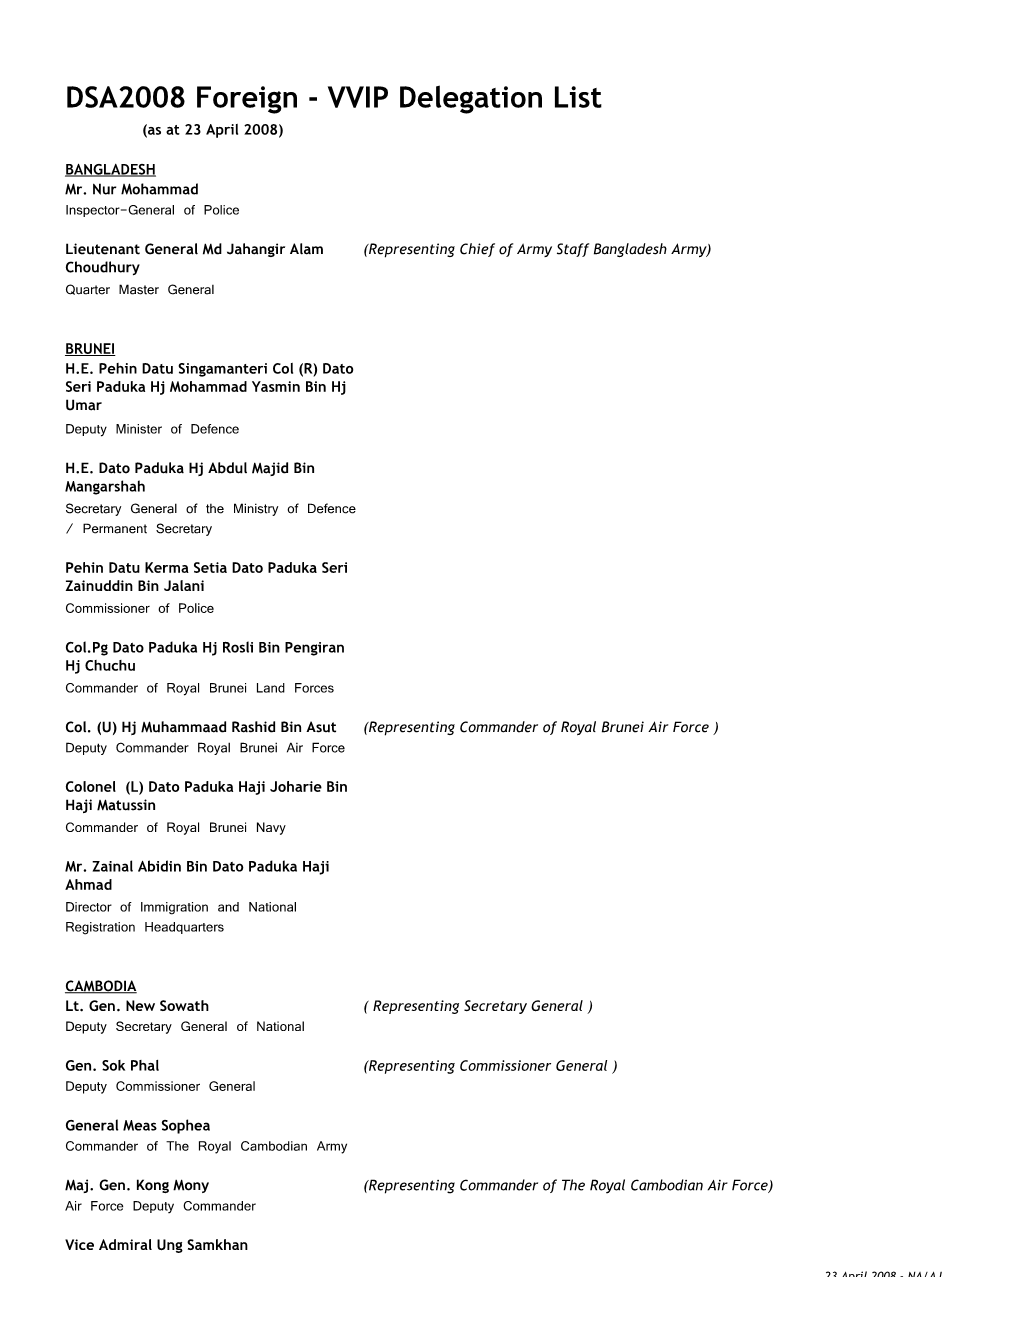 DSA2008 Foreign - VVIP Delegation List (As at 23 April 2008)